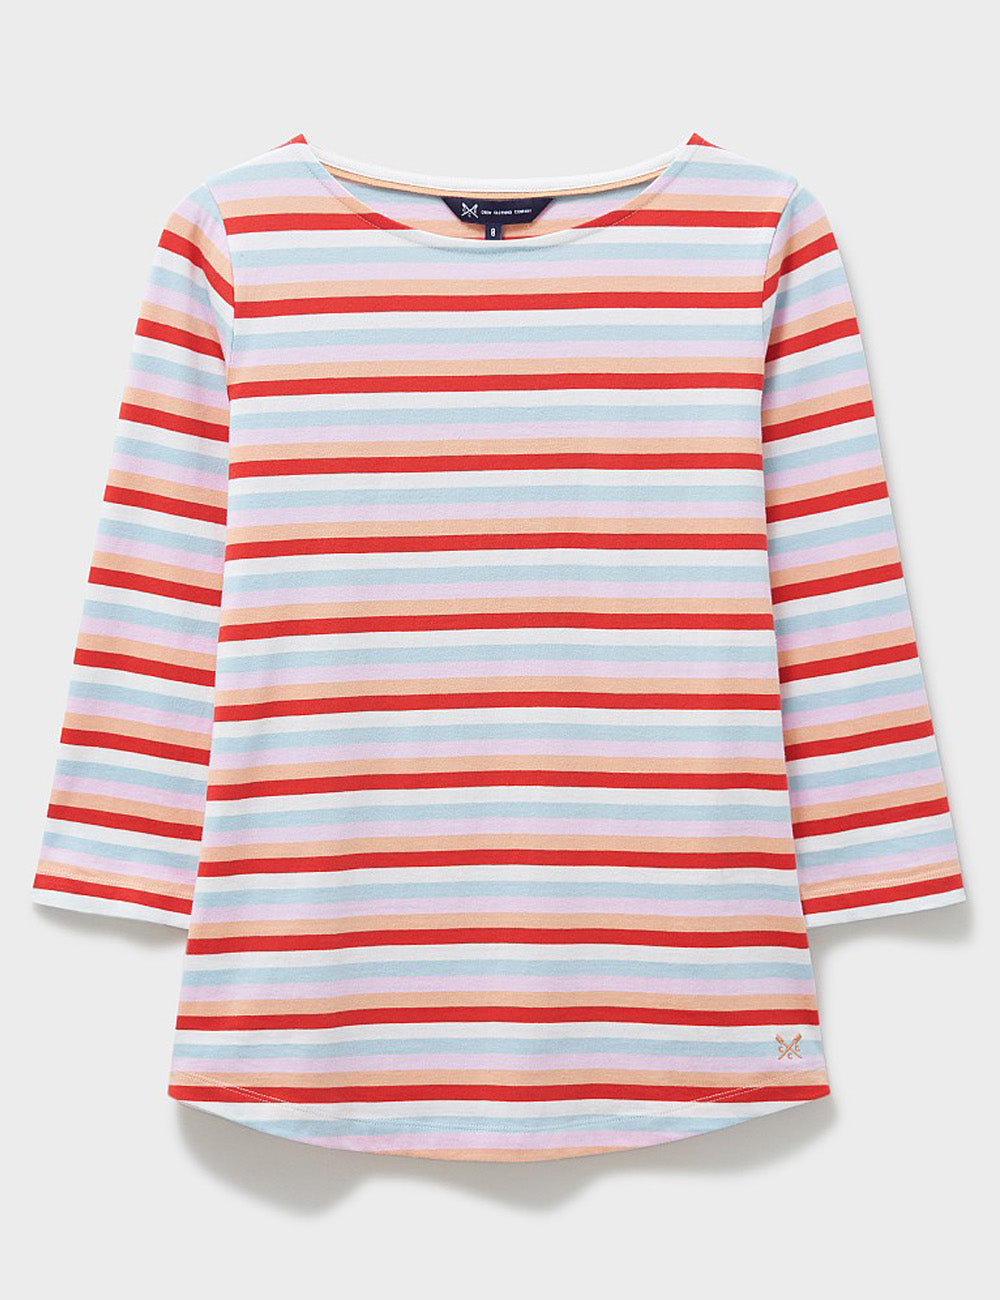 Crew Clothing Essential Breton T-Shirt - Orange Multi